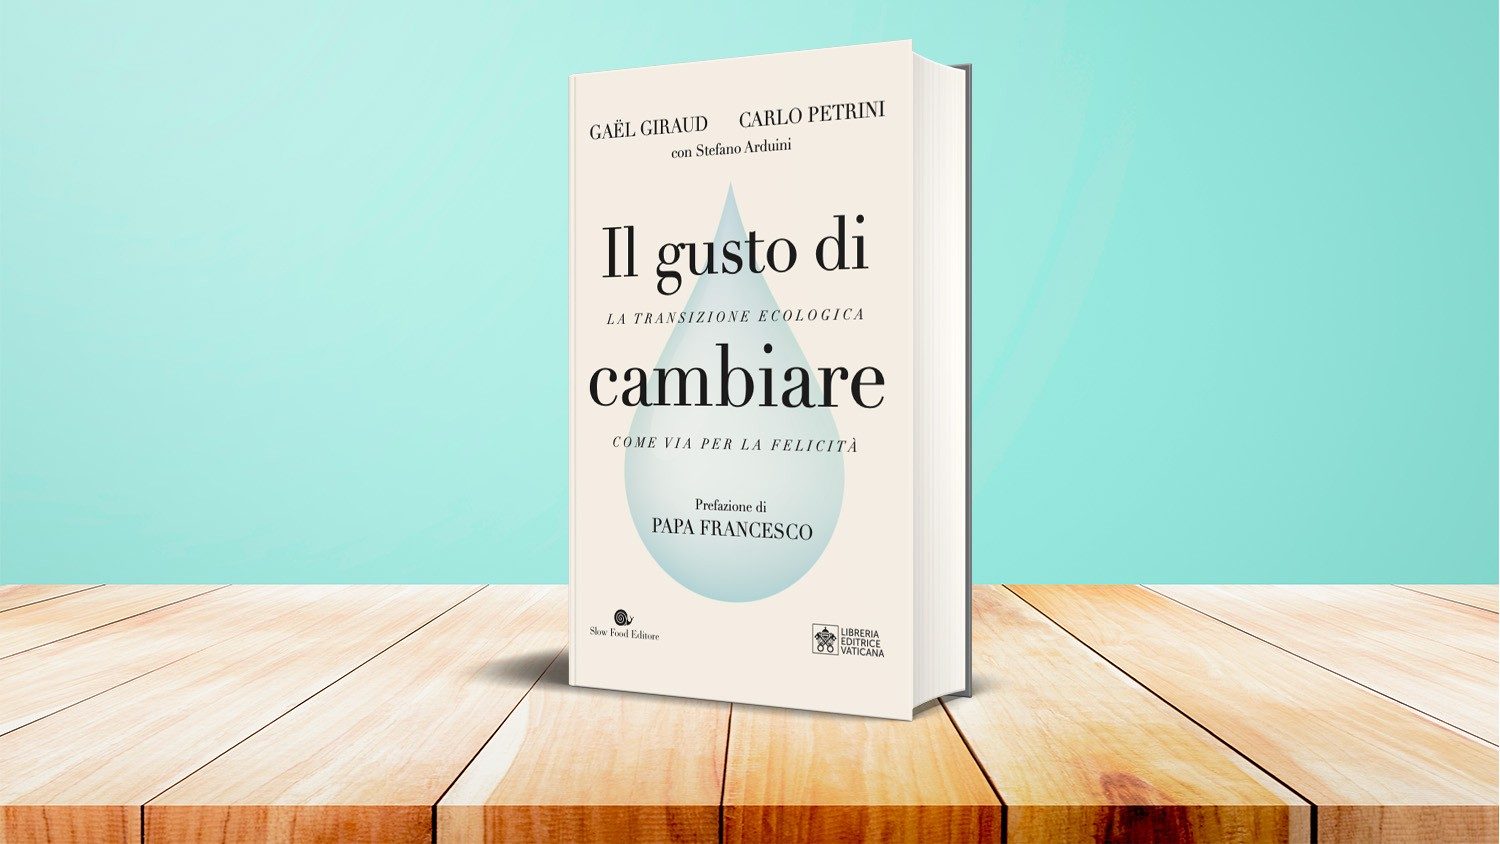 La copertina del volume di Giraud e Petrini con la prefazione del Papa